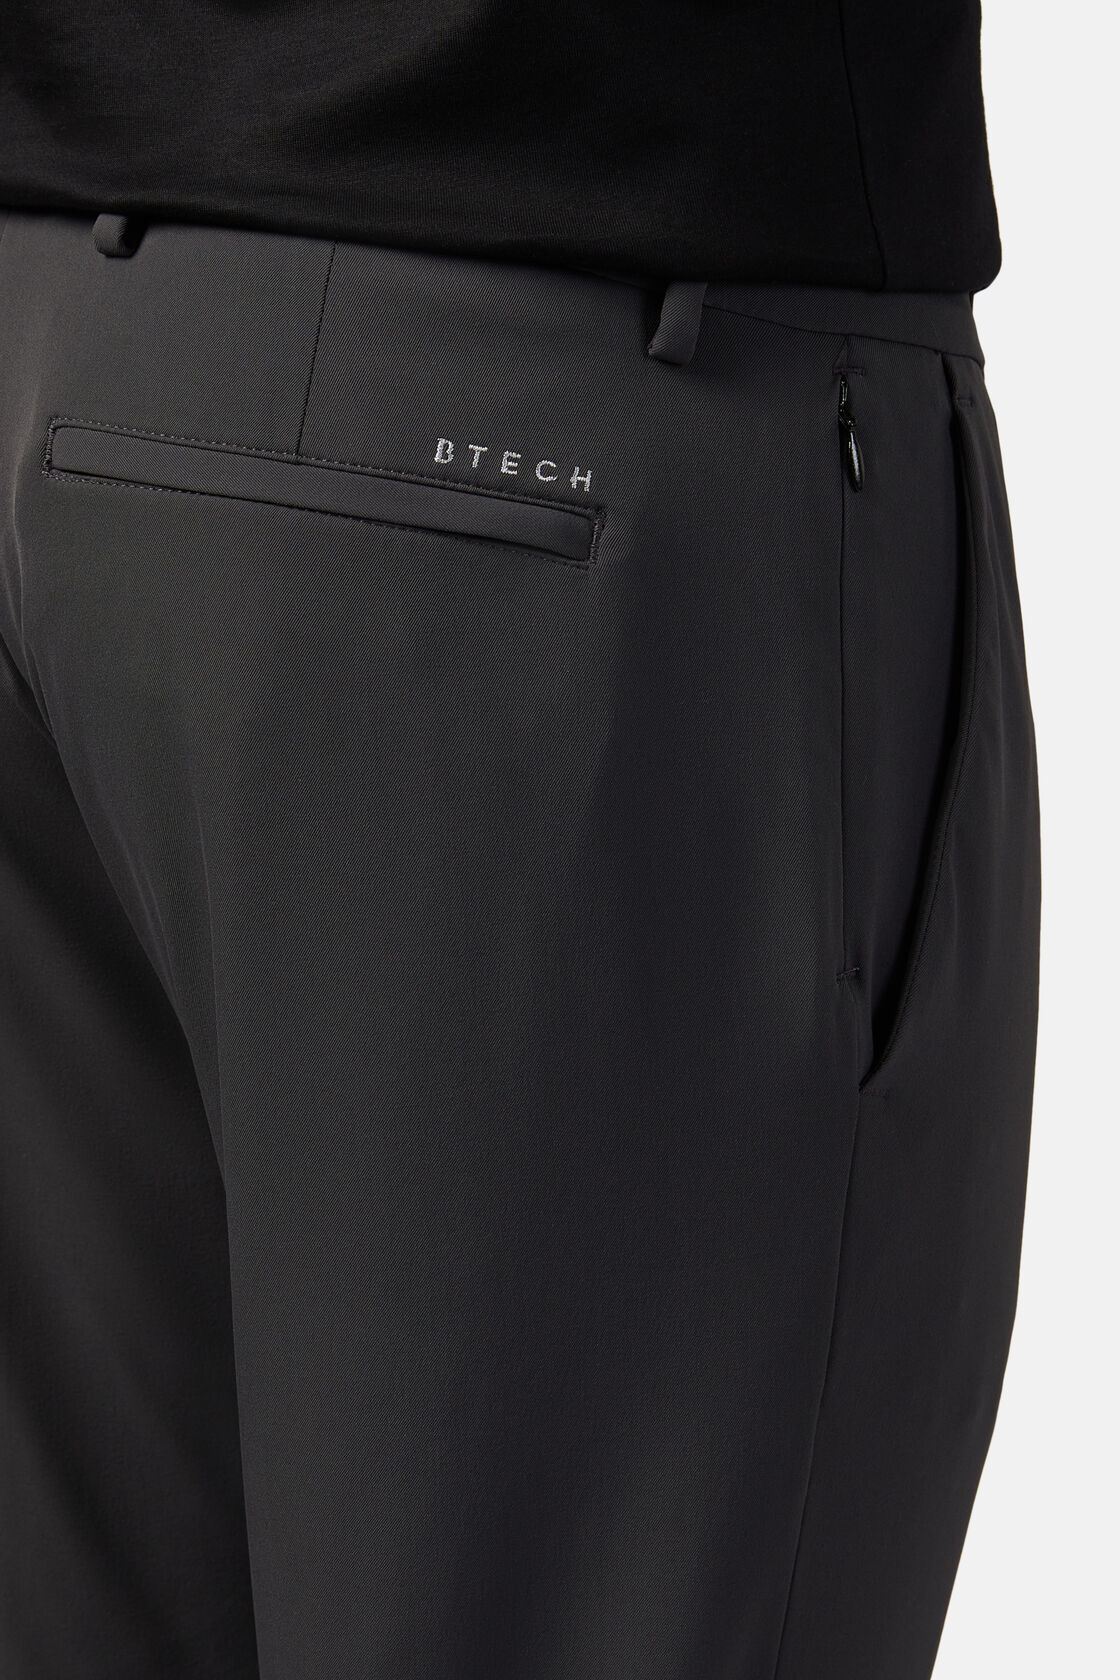 Pantalon En Nylon Stretch Performance B Tech, Charbon, hi-res